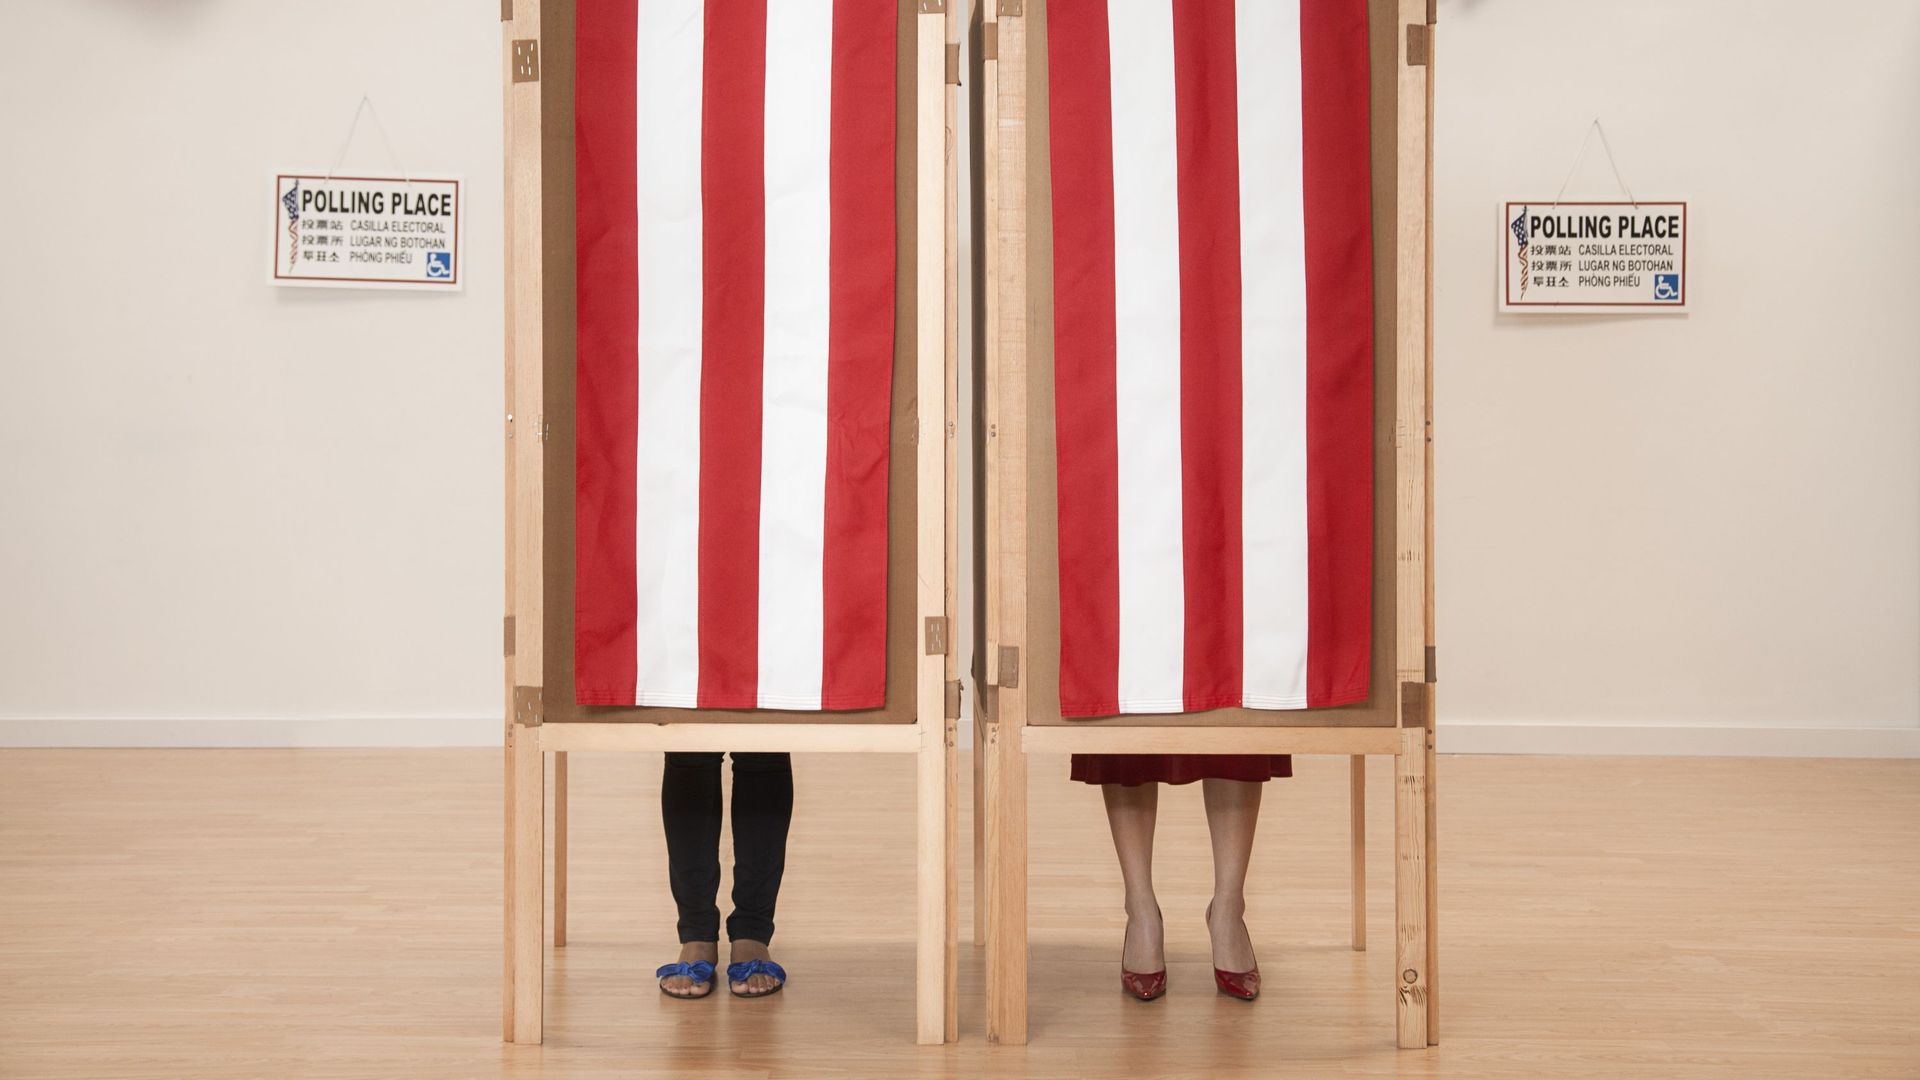 Même sans ingérence étrangère, le système électoral américain est fragile